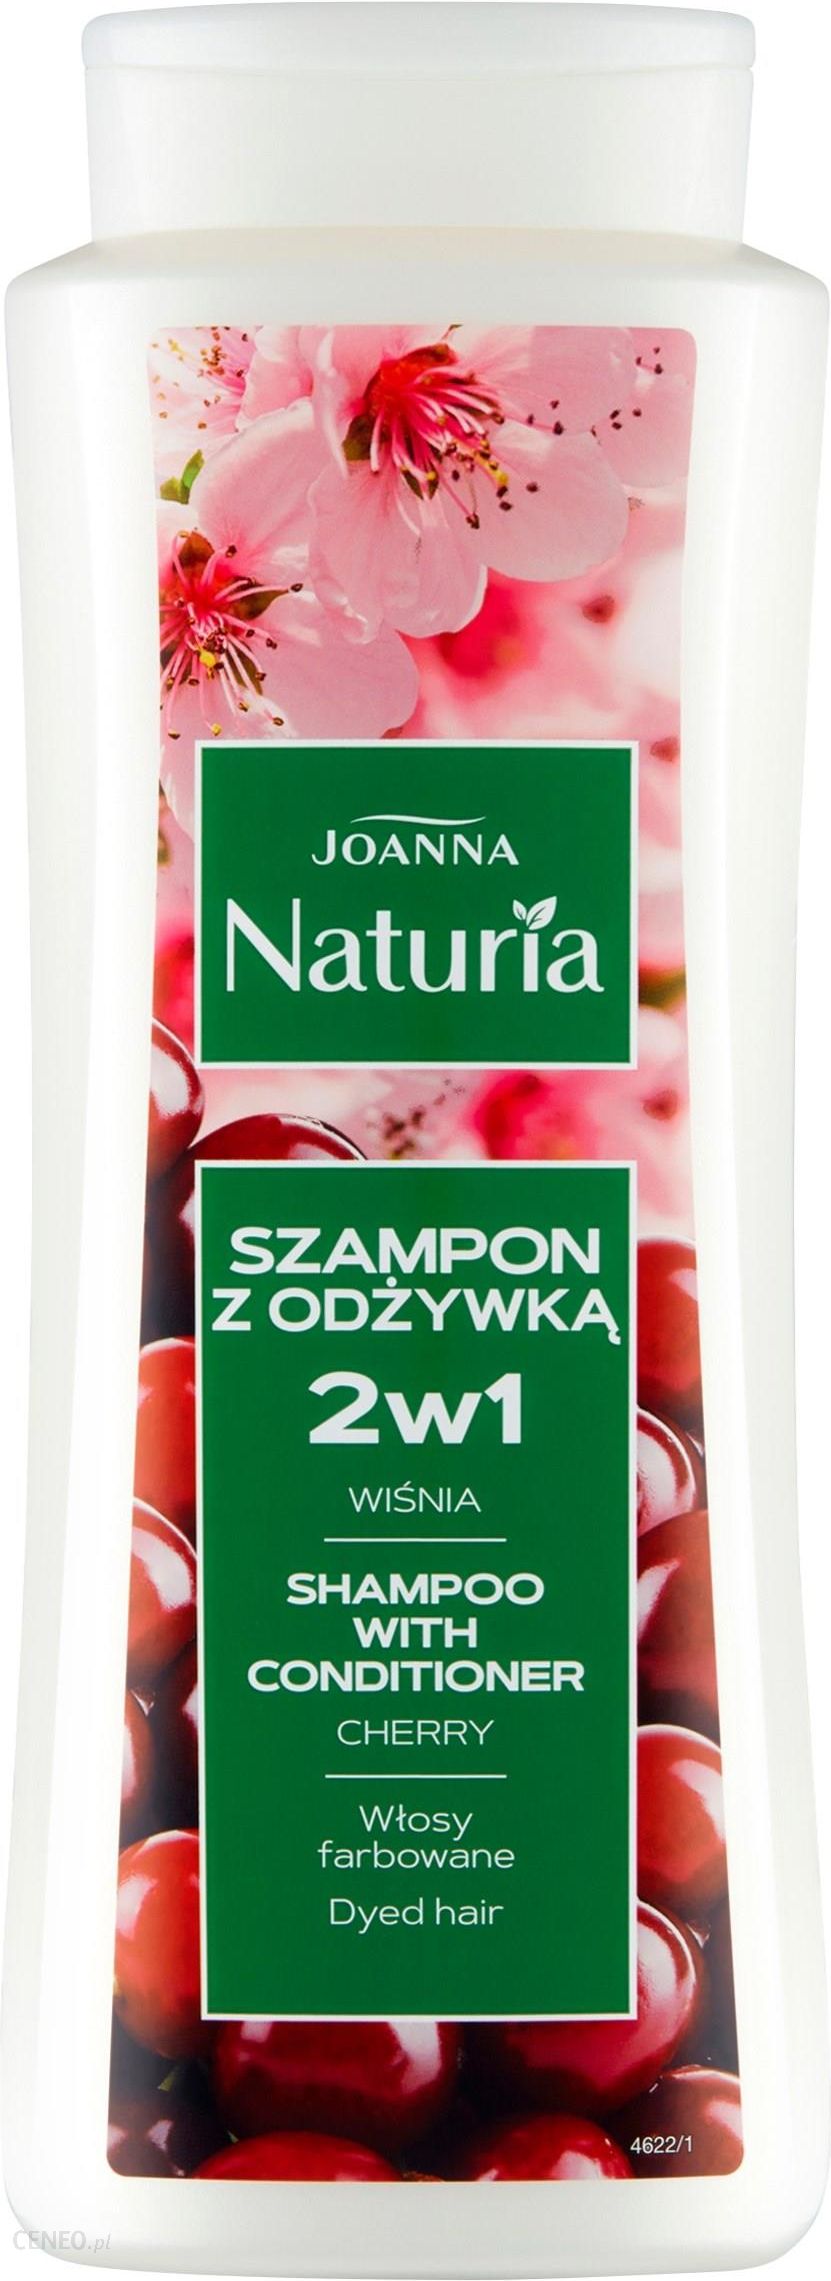 joanna szampon naturia